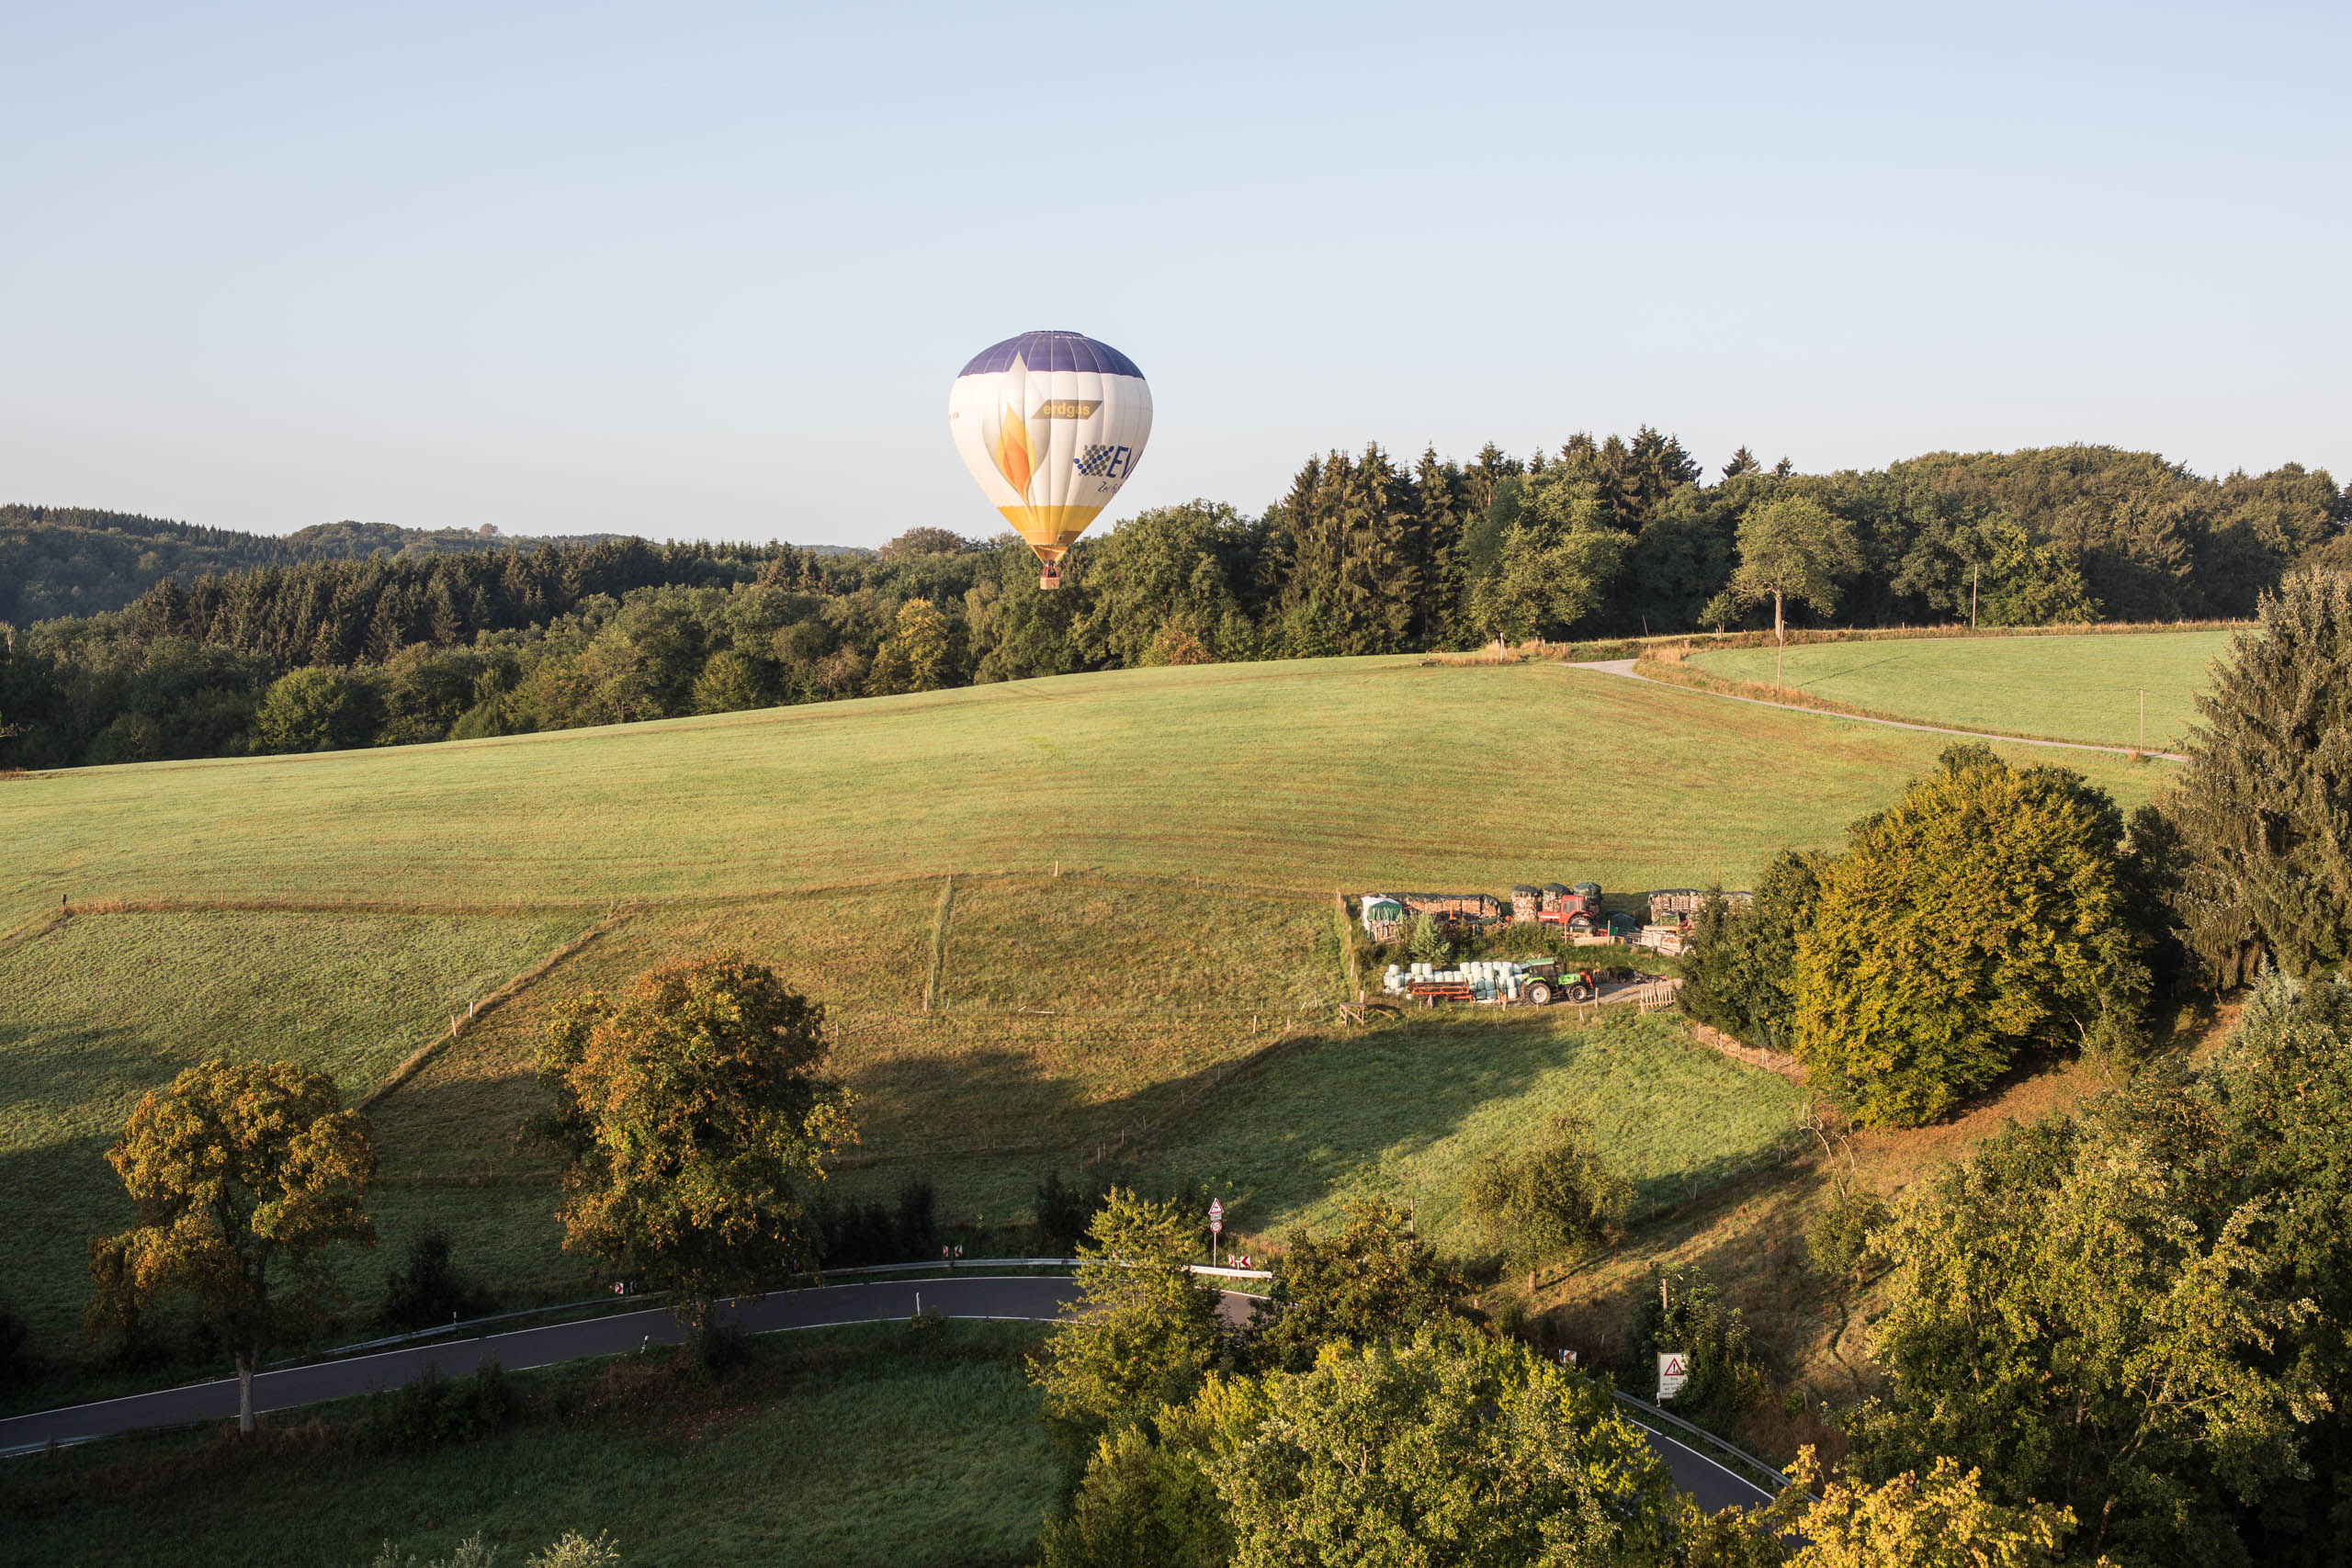 Ballonfahrt über dem Rheinisch-Bergischen Kreis sowie der Dhünntalsperre